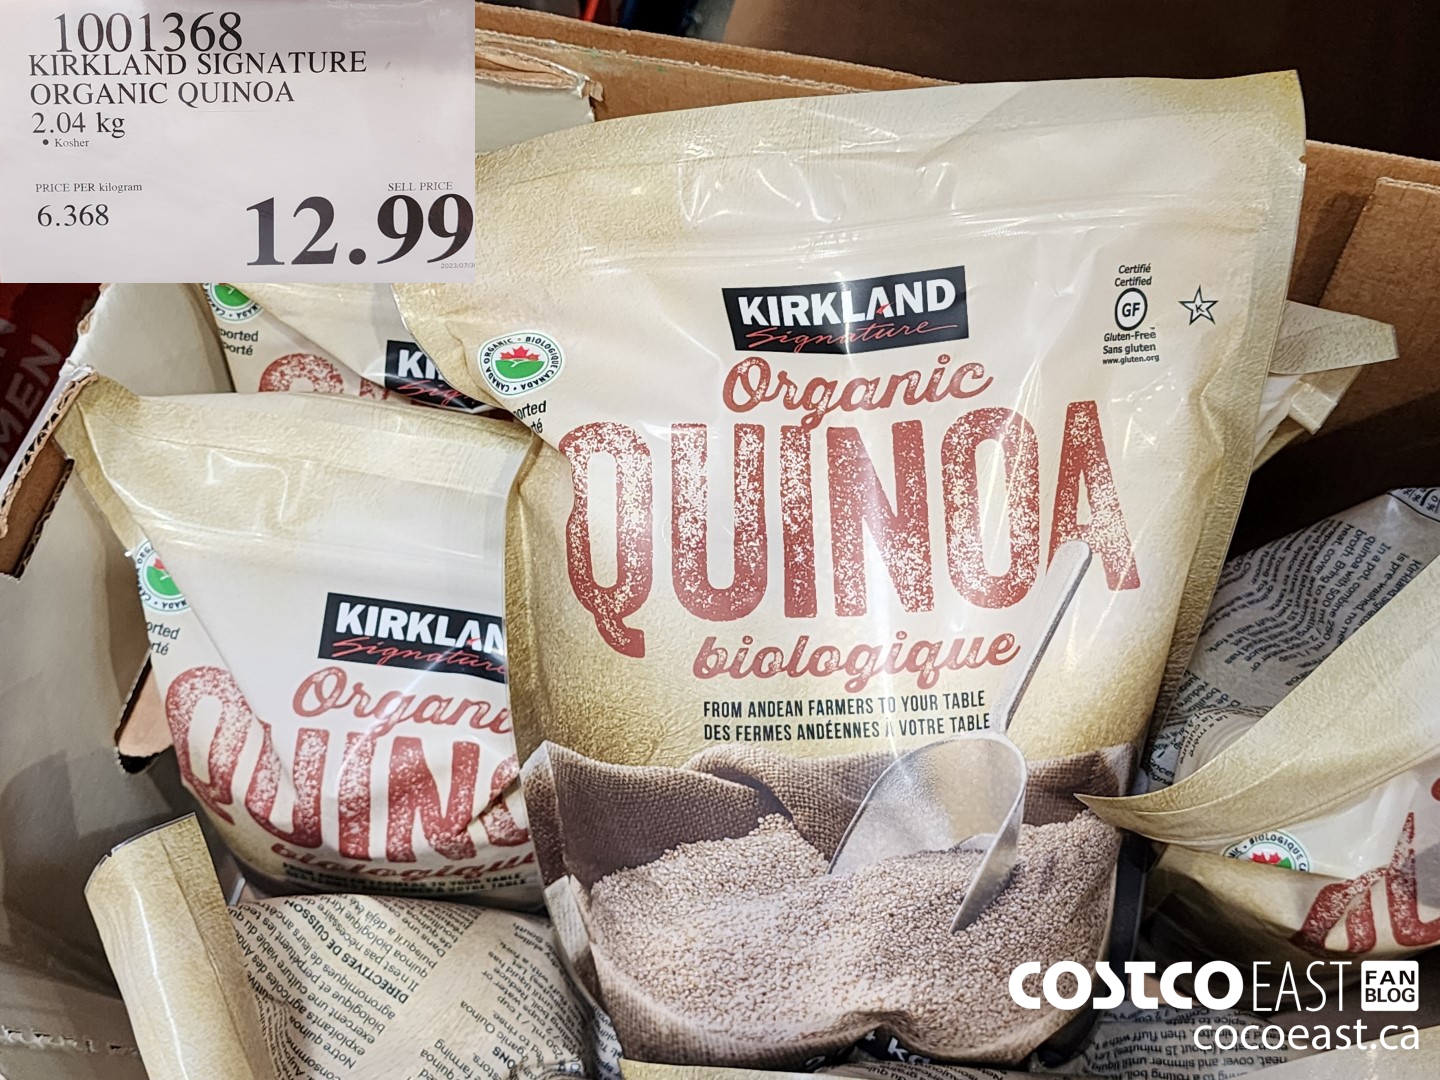 Kirkland Signature Organic Quinoa, 2.04 kg